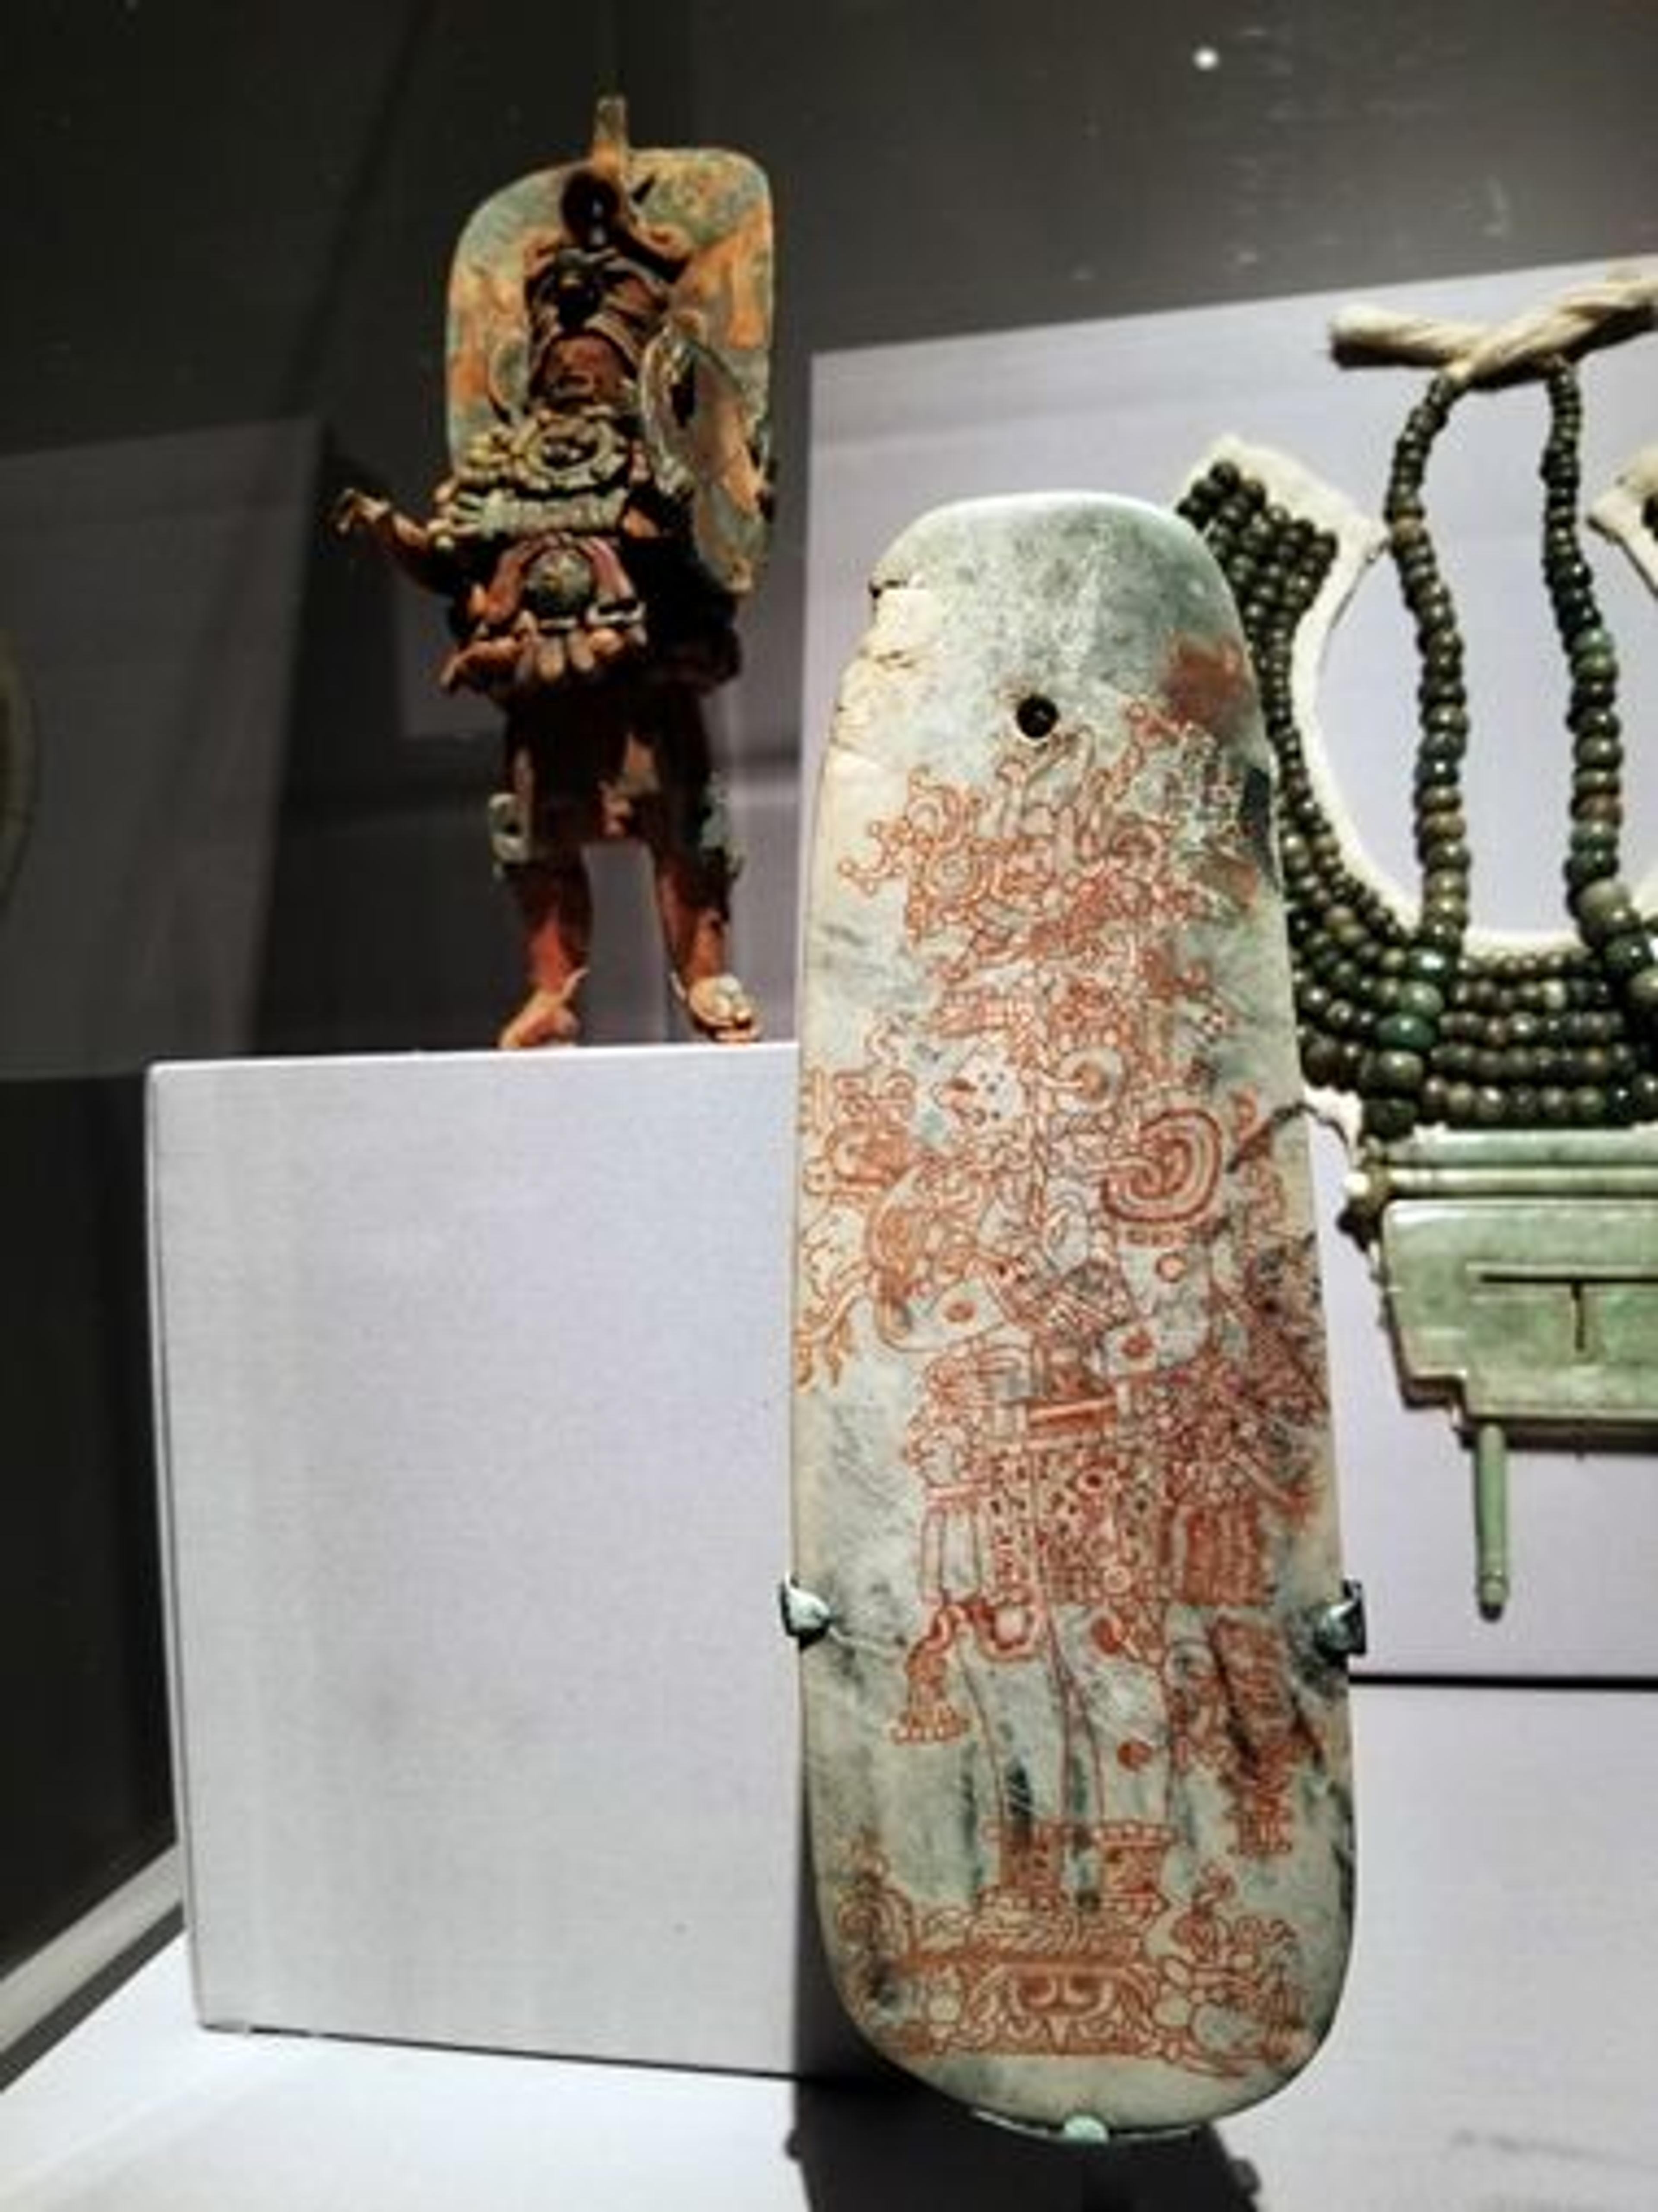 Installation view of a jadeite belt ornament in the 'Golden Kingdoms' exhibition galleries